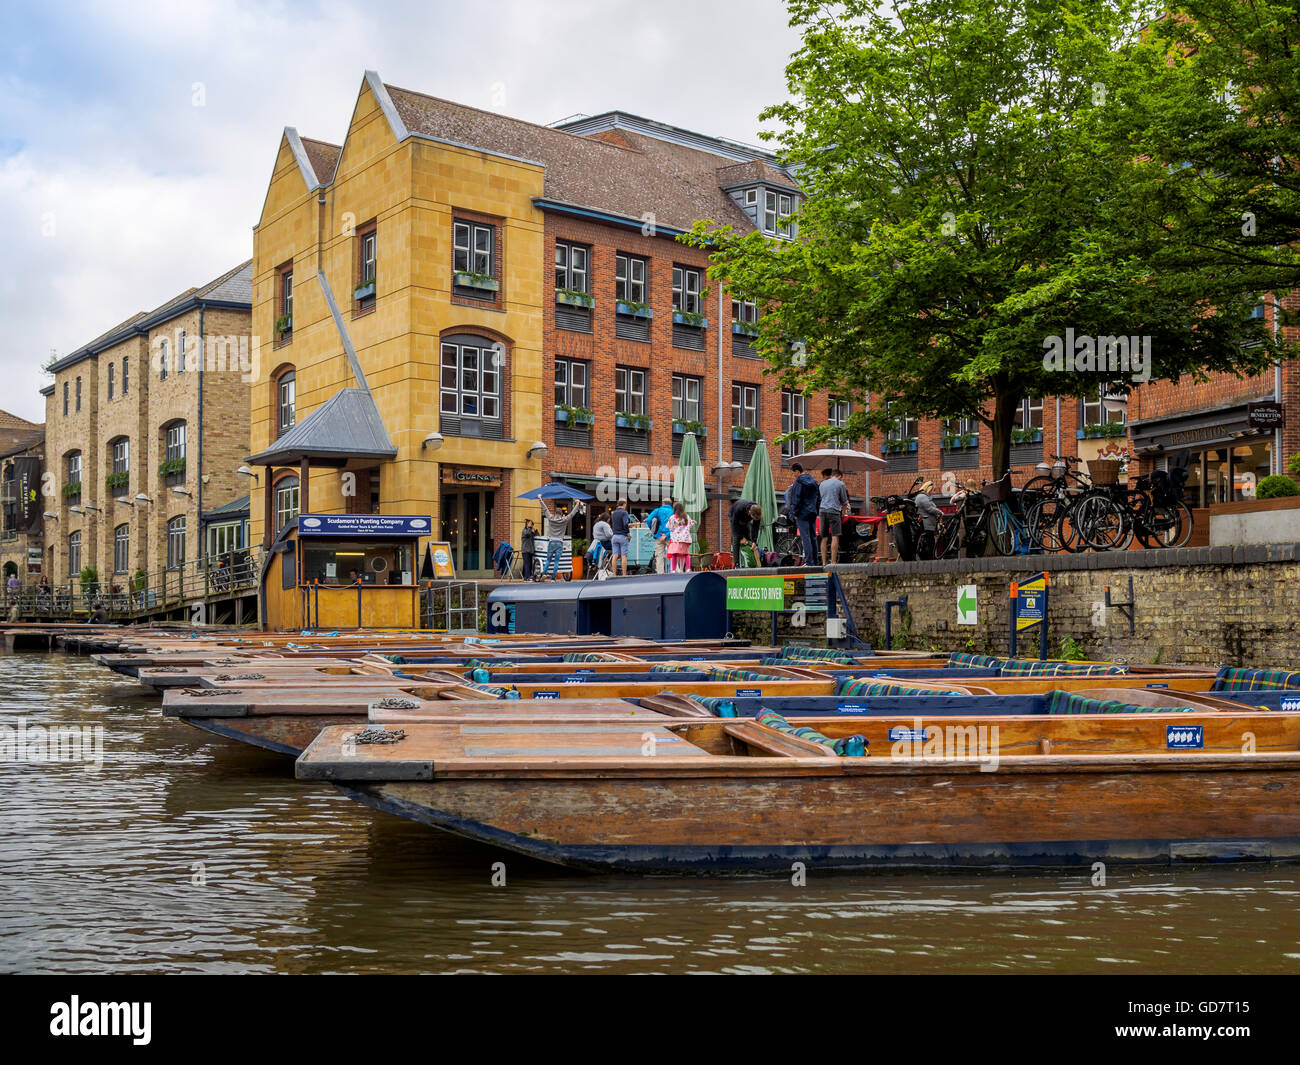 Quai, Cambridge, Angleterre, Royaume-Uni. Un endroit populaire pour voitures et monter sur des bateaux en barque Banque D'Images